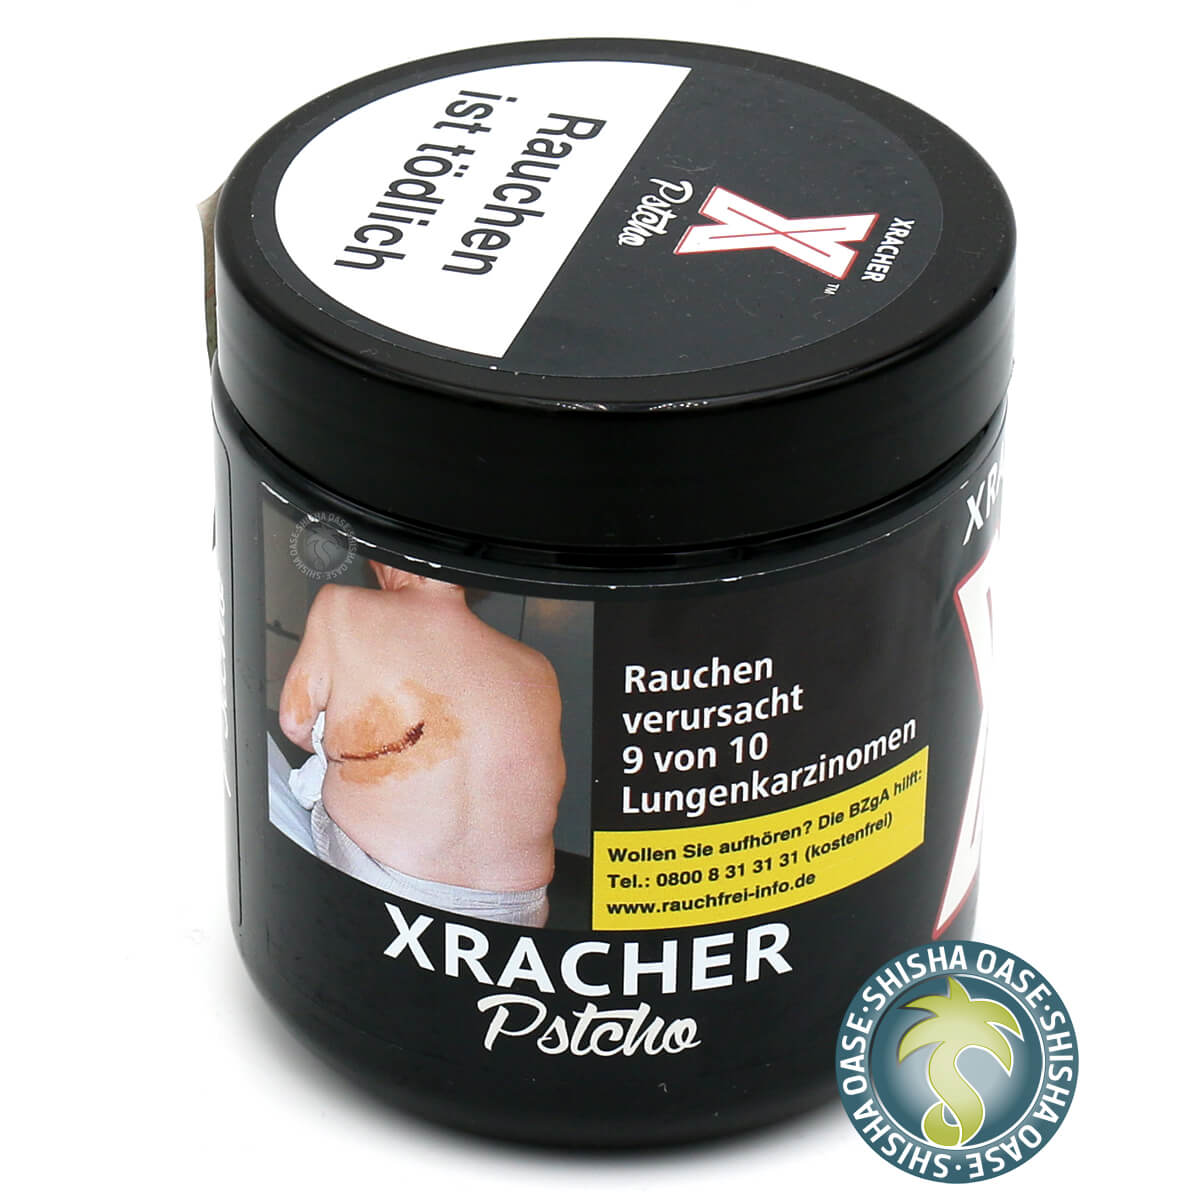 XRacher Tobacco - Pstcho 200g